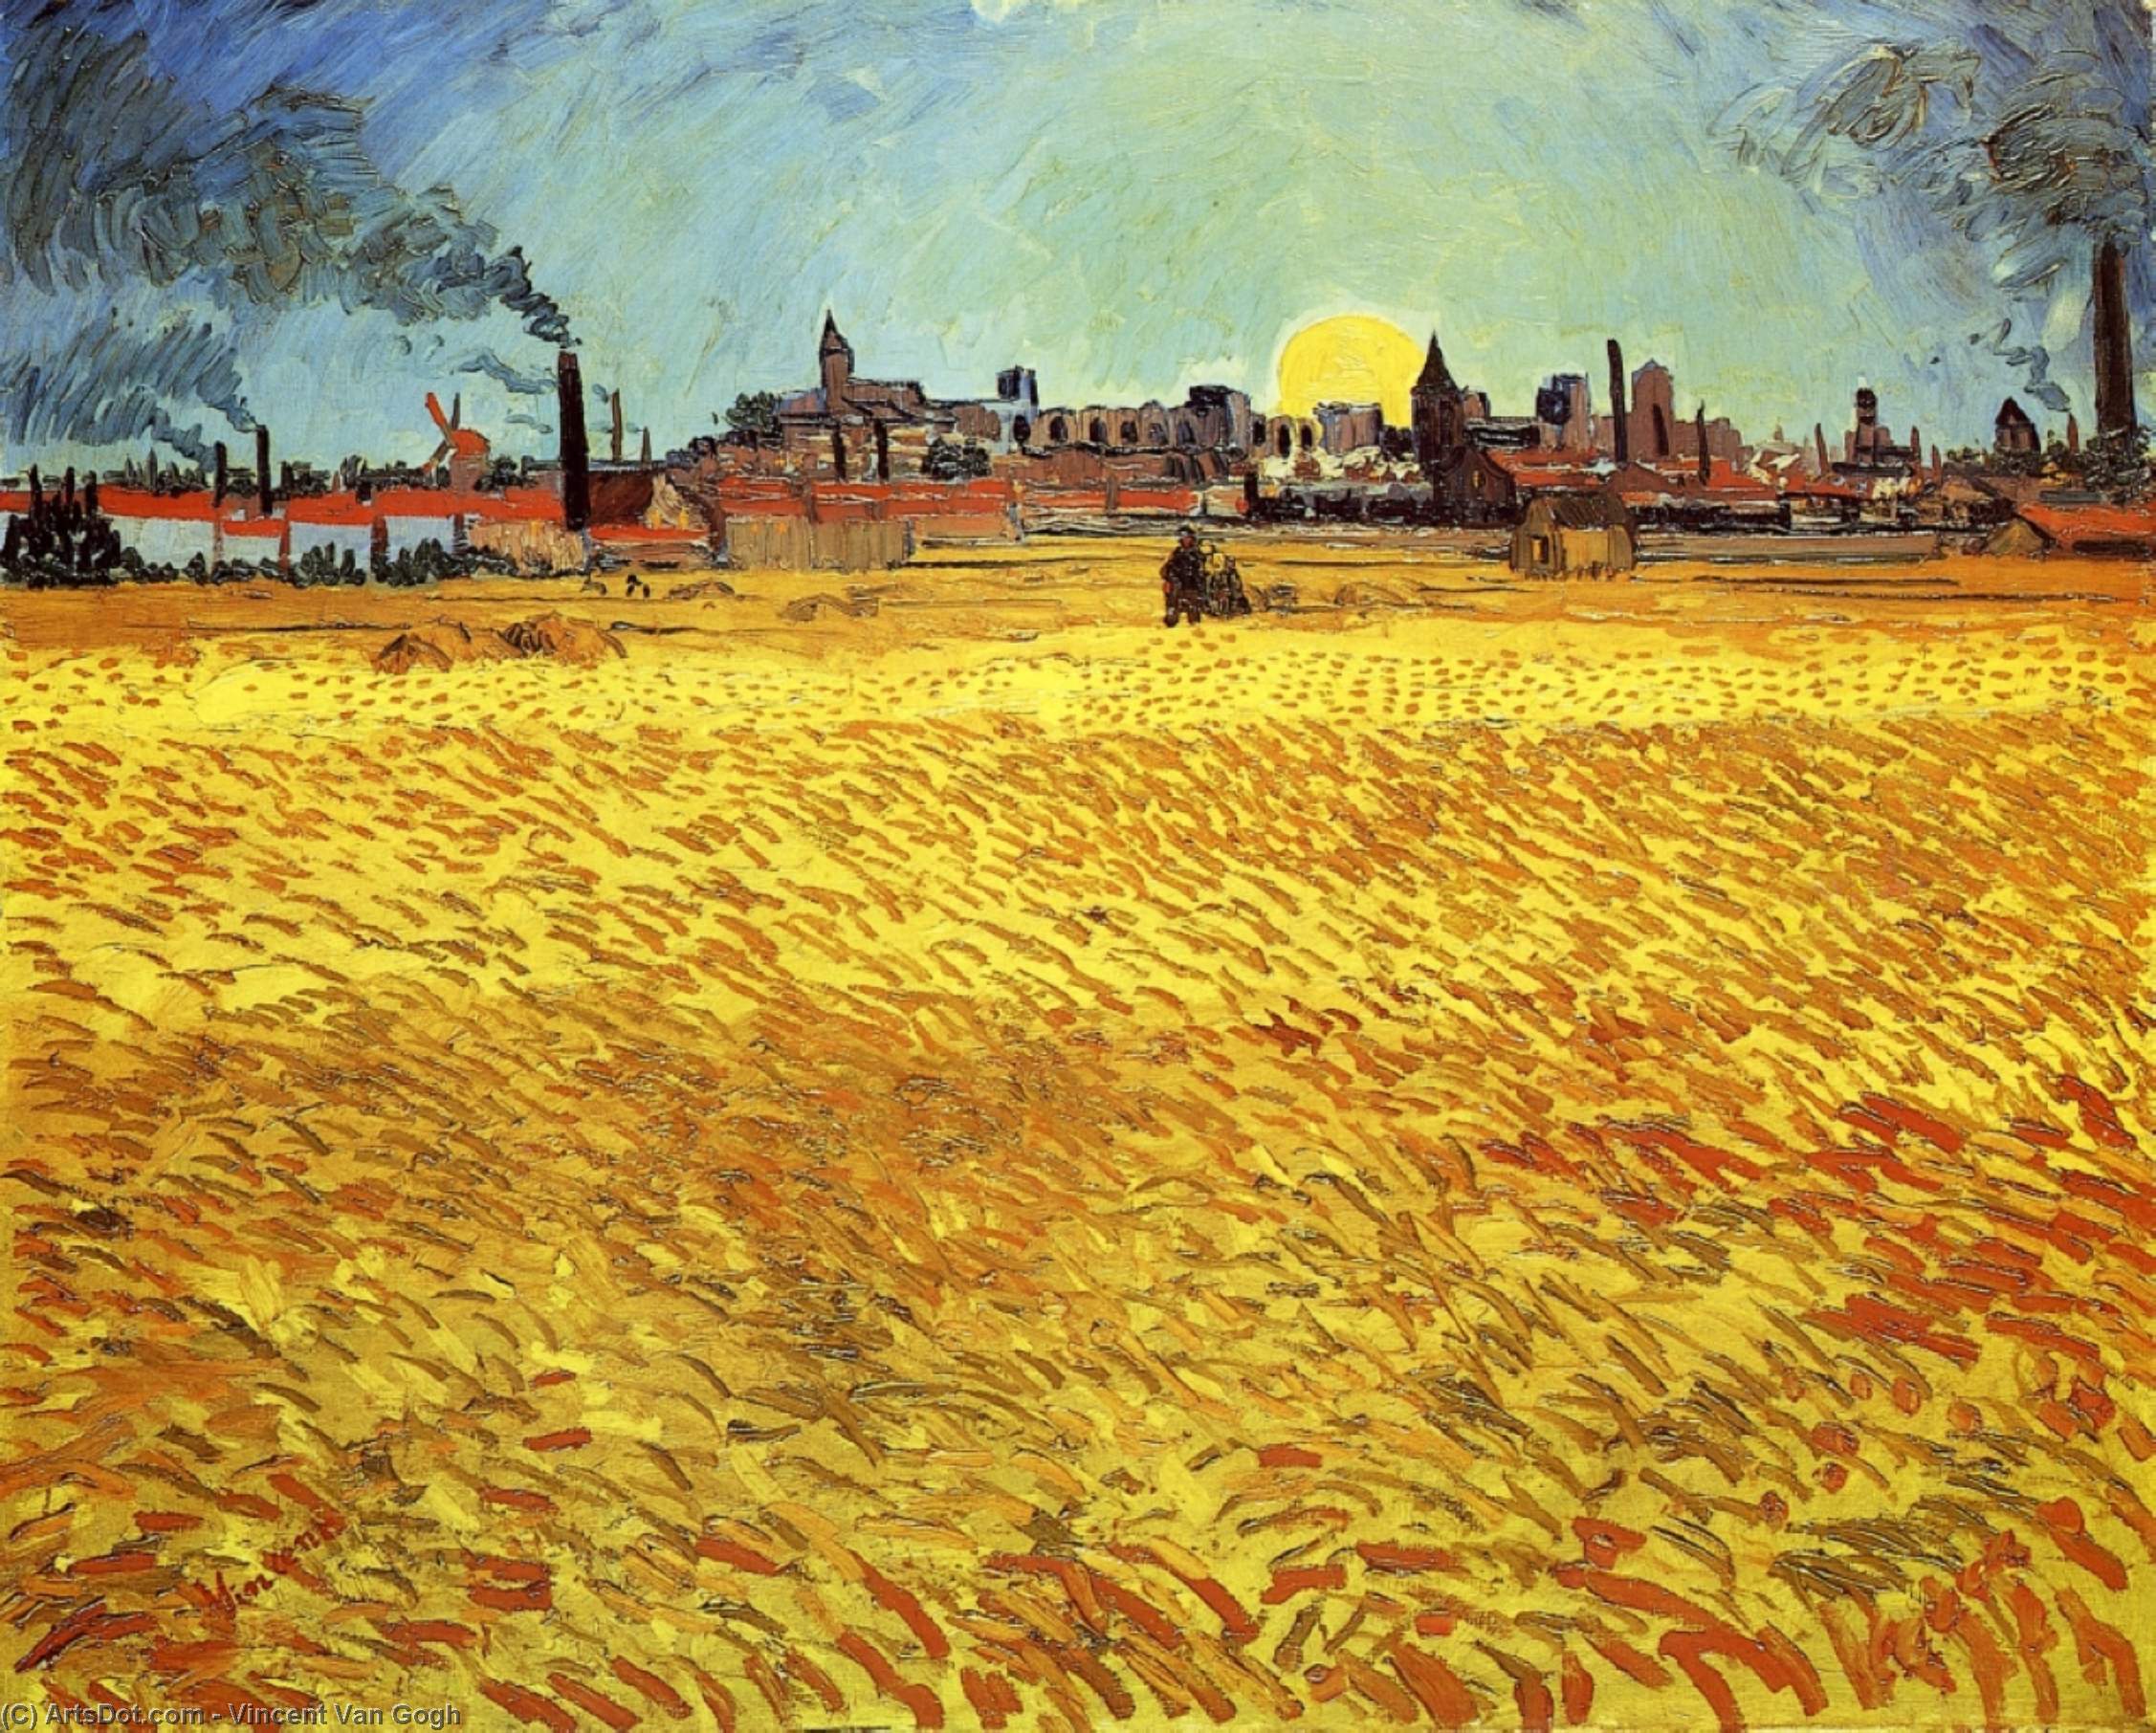 Comprar Reproducciones De Arte Del Museo Summer Evening, Wheatfield con la puesta del sol, 1888 de Vincent Van Gogh (1853-1890, Netherlands) | ArtsDot.com